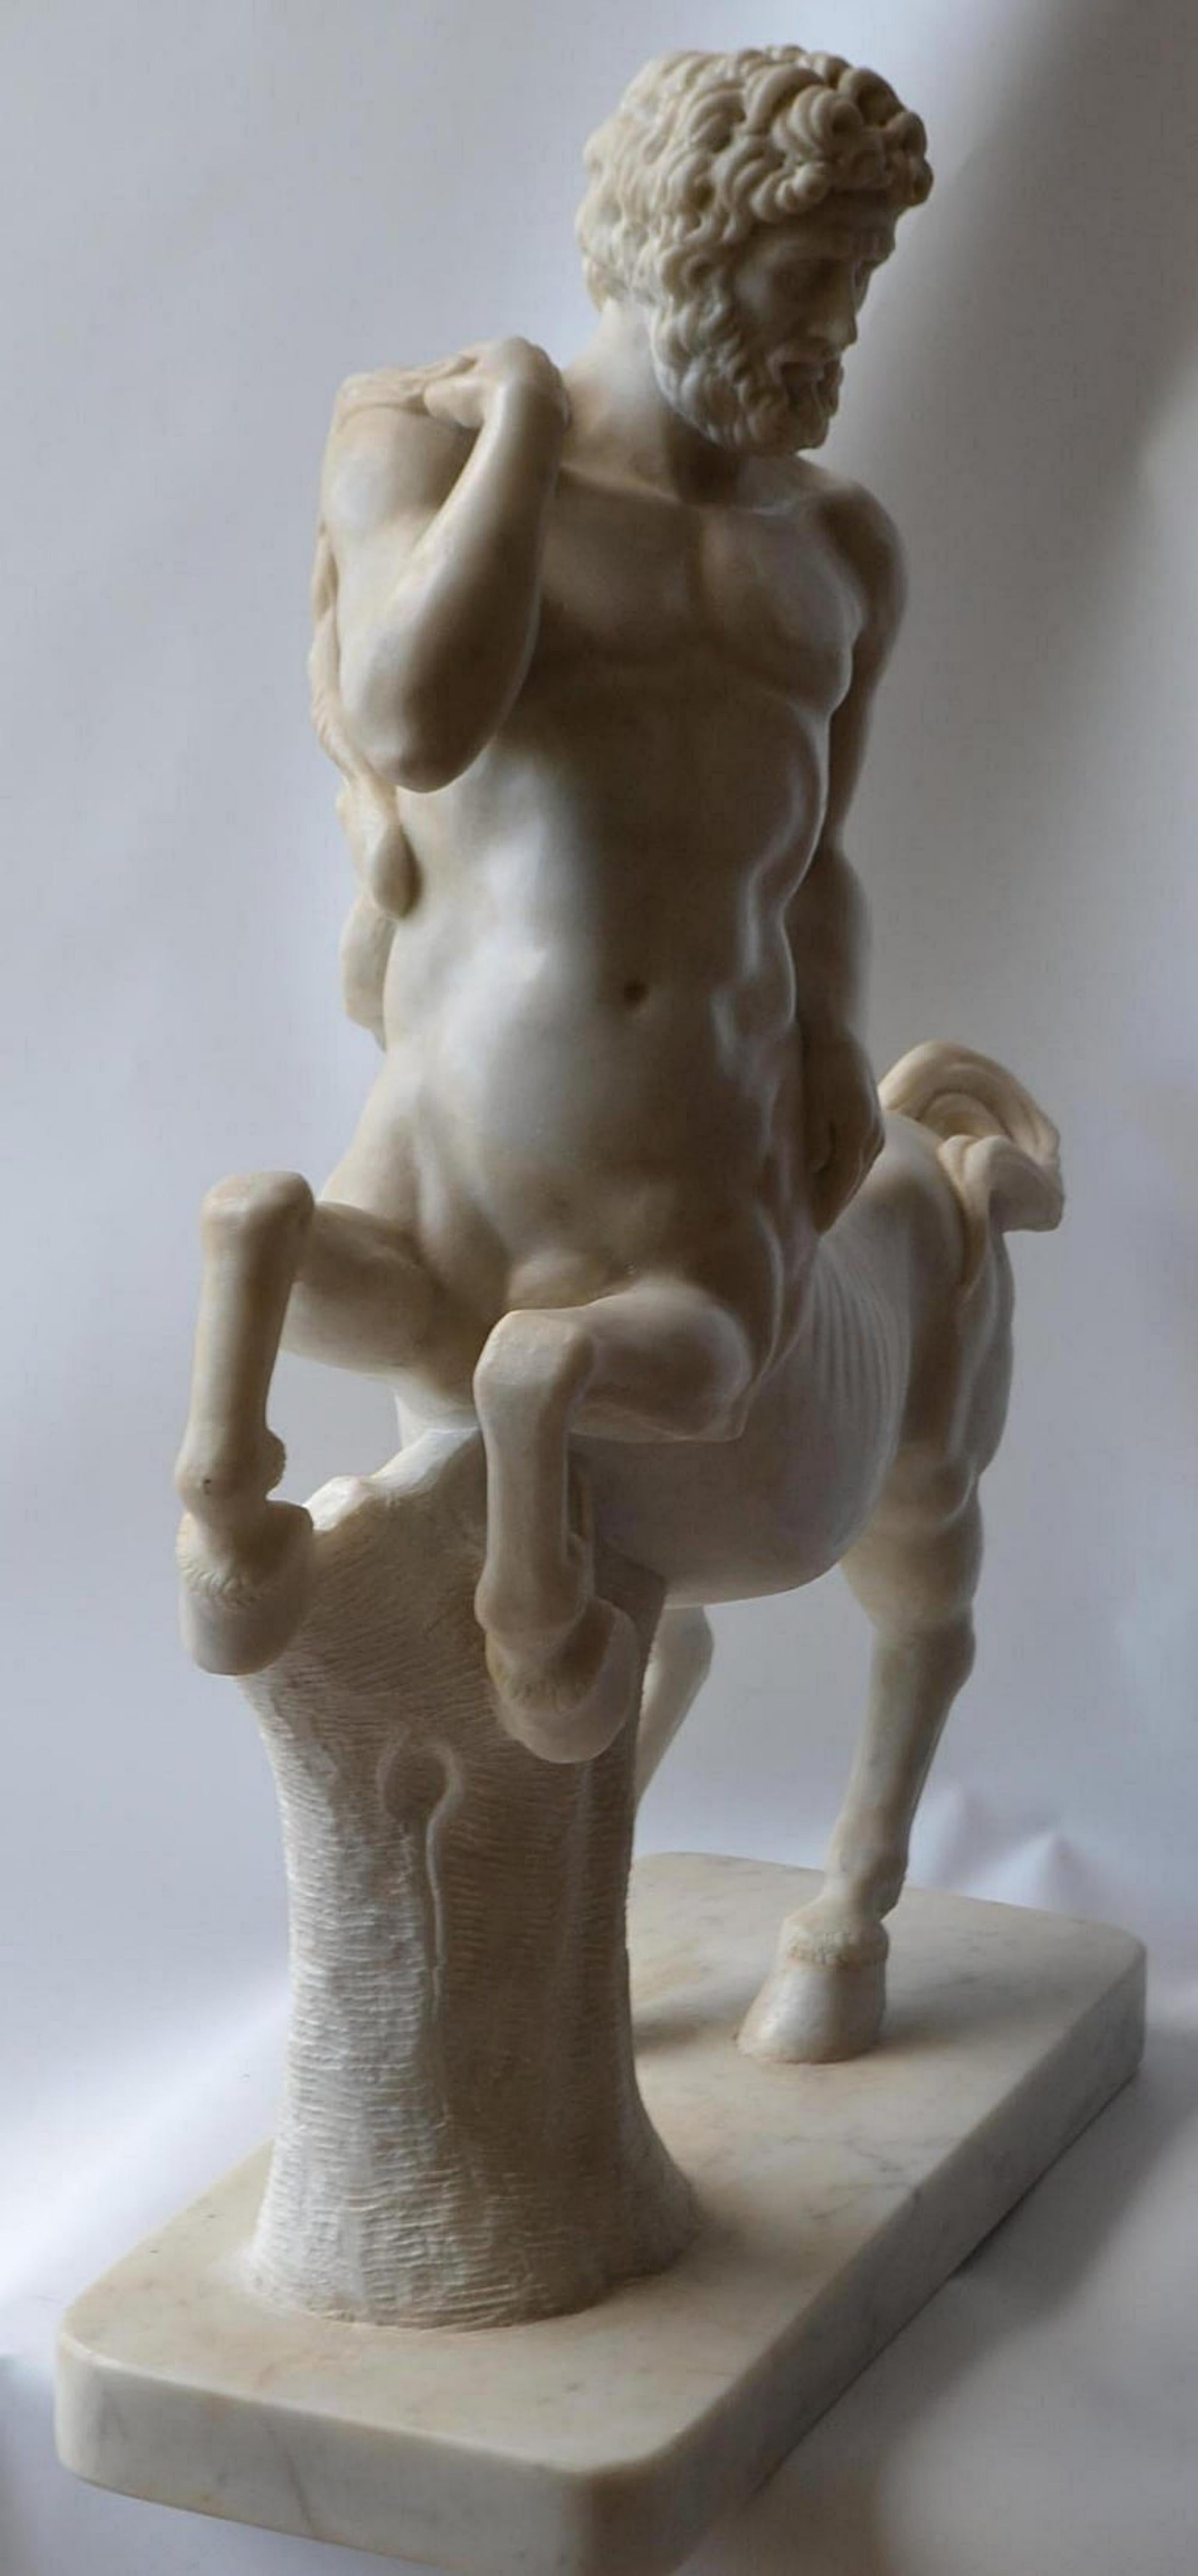 Étonnant centaure sculpté en marbre de Carrare.
Début du 20e siècle
Le centaure est une créature de la mythologie grecque.
Cette créature mythologique, mi-homme, mi-cheval, avait la particularité de posséder toutes les vertus et tous les défauts de